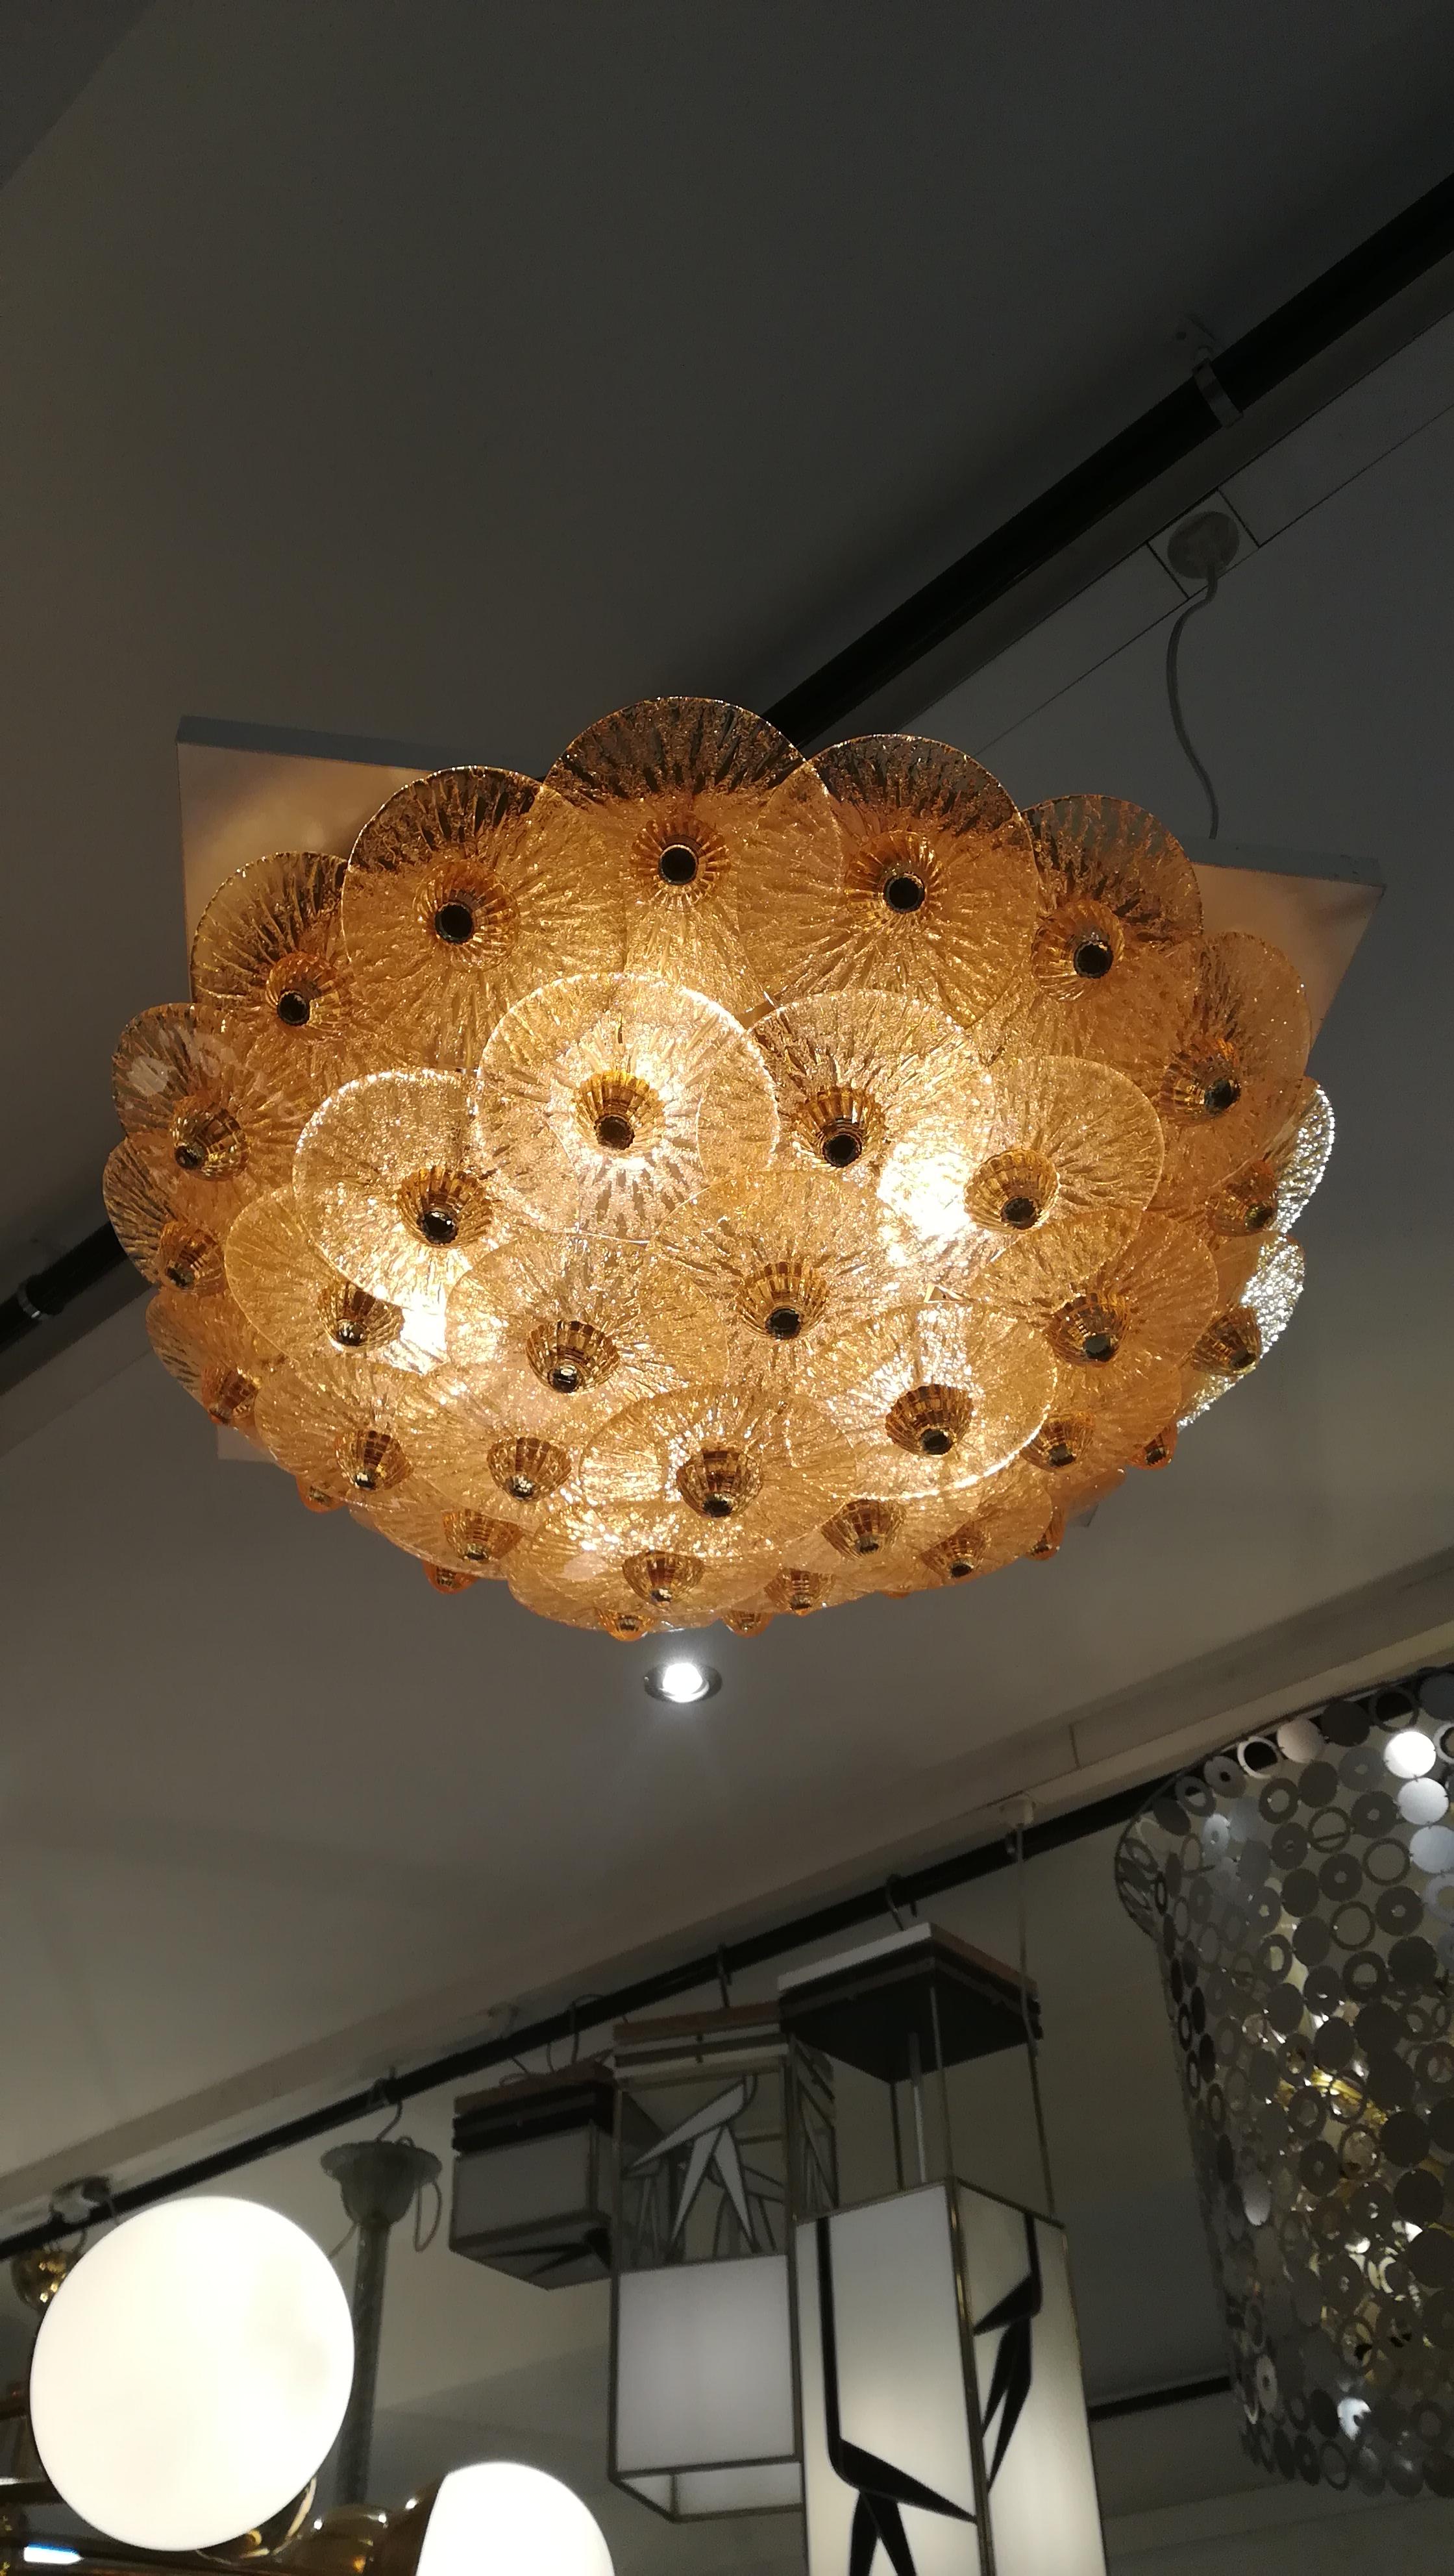 Golden crystal ceiling light.
5 bulbs.